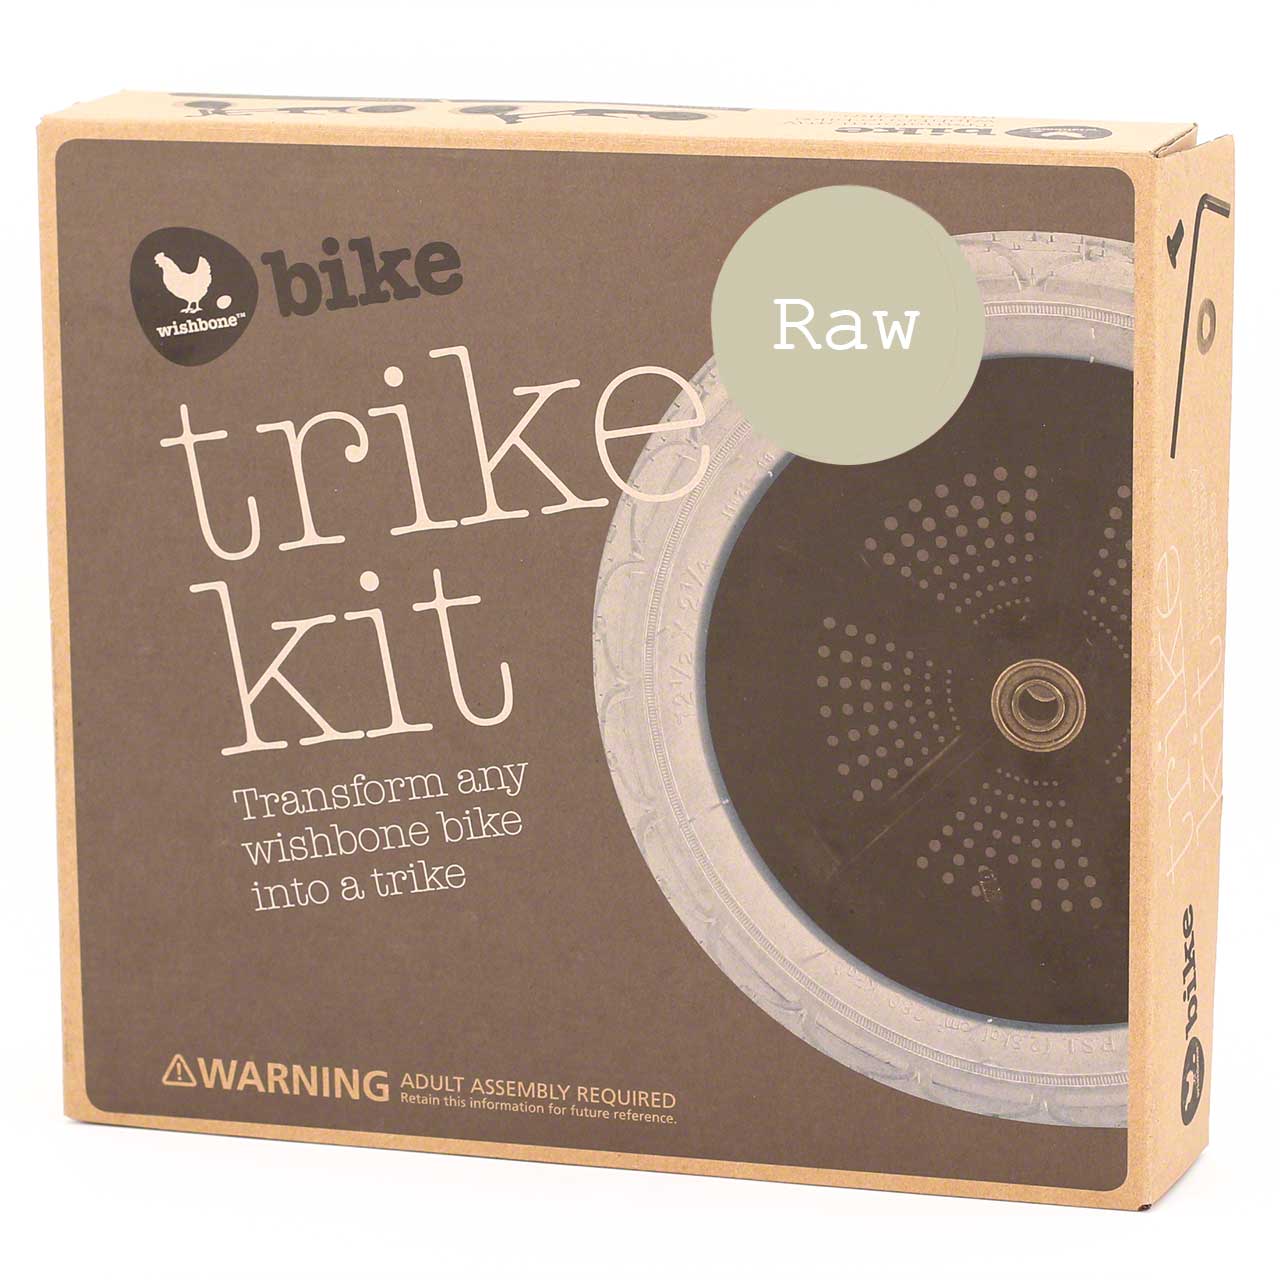 Umbauset zum Dreirad - Trike Kit - für das "2in1" Bike raw